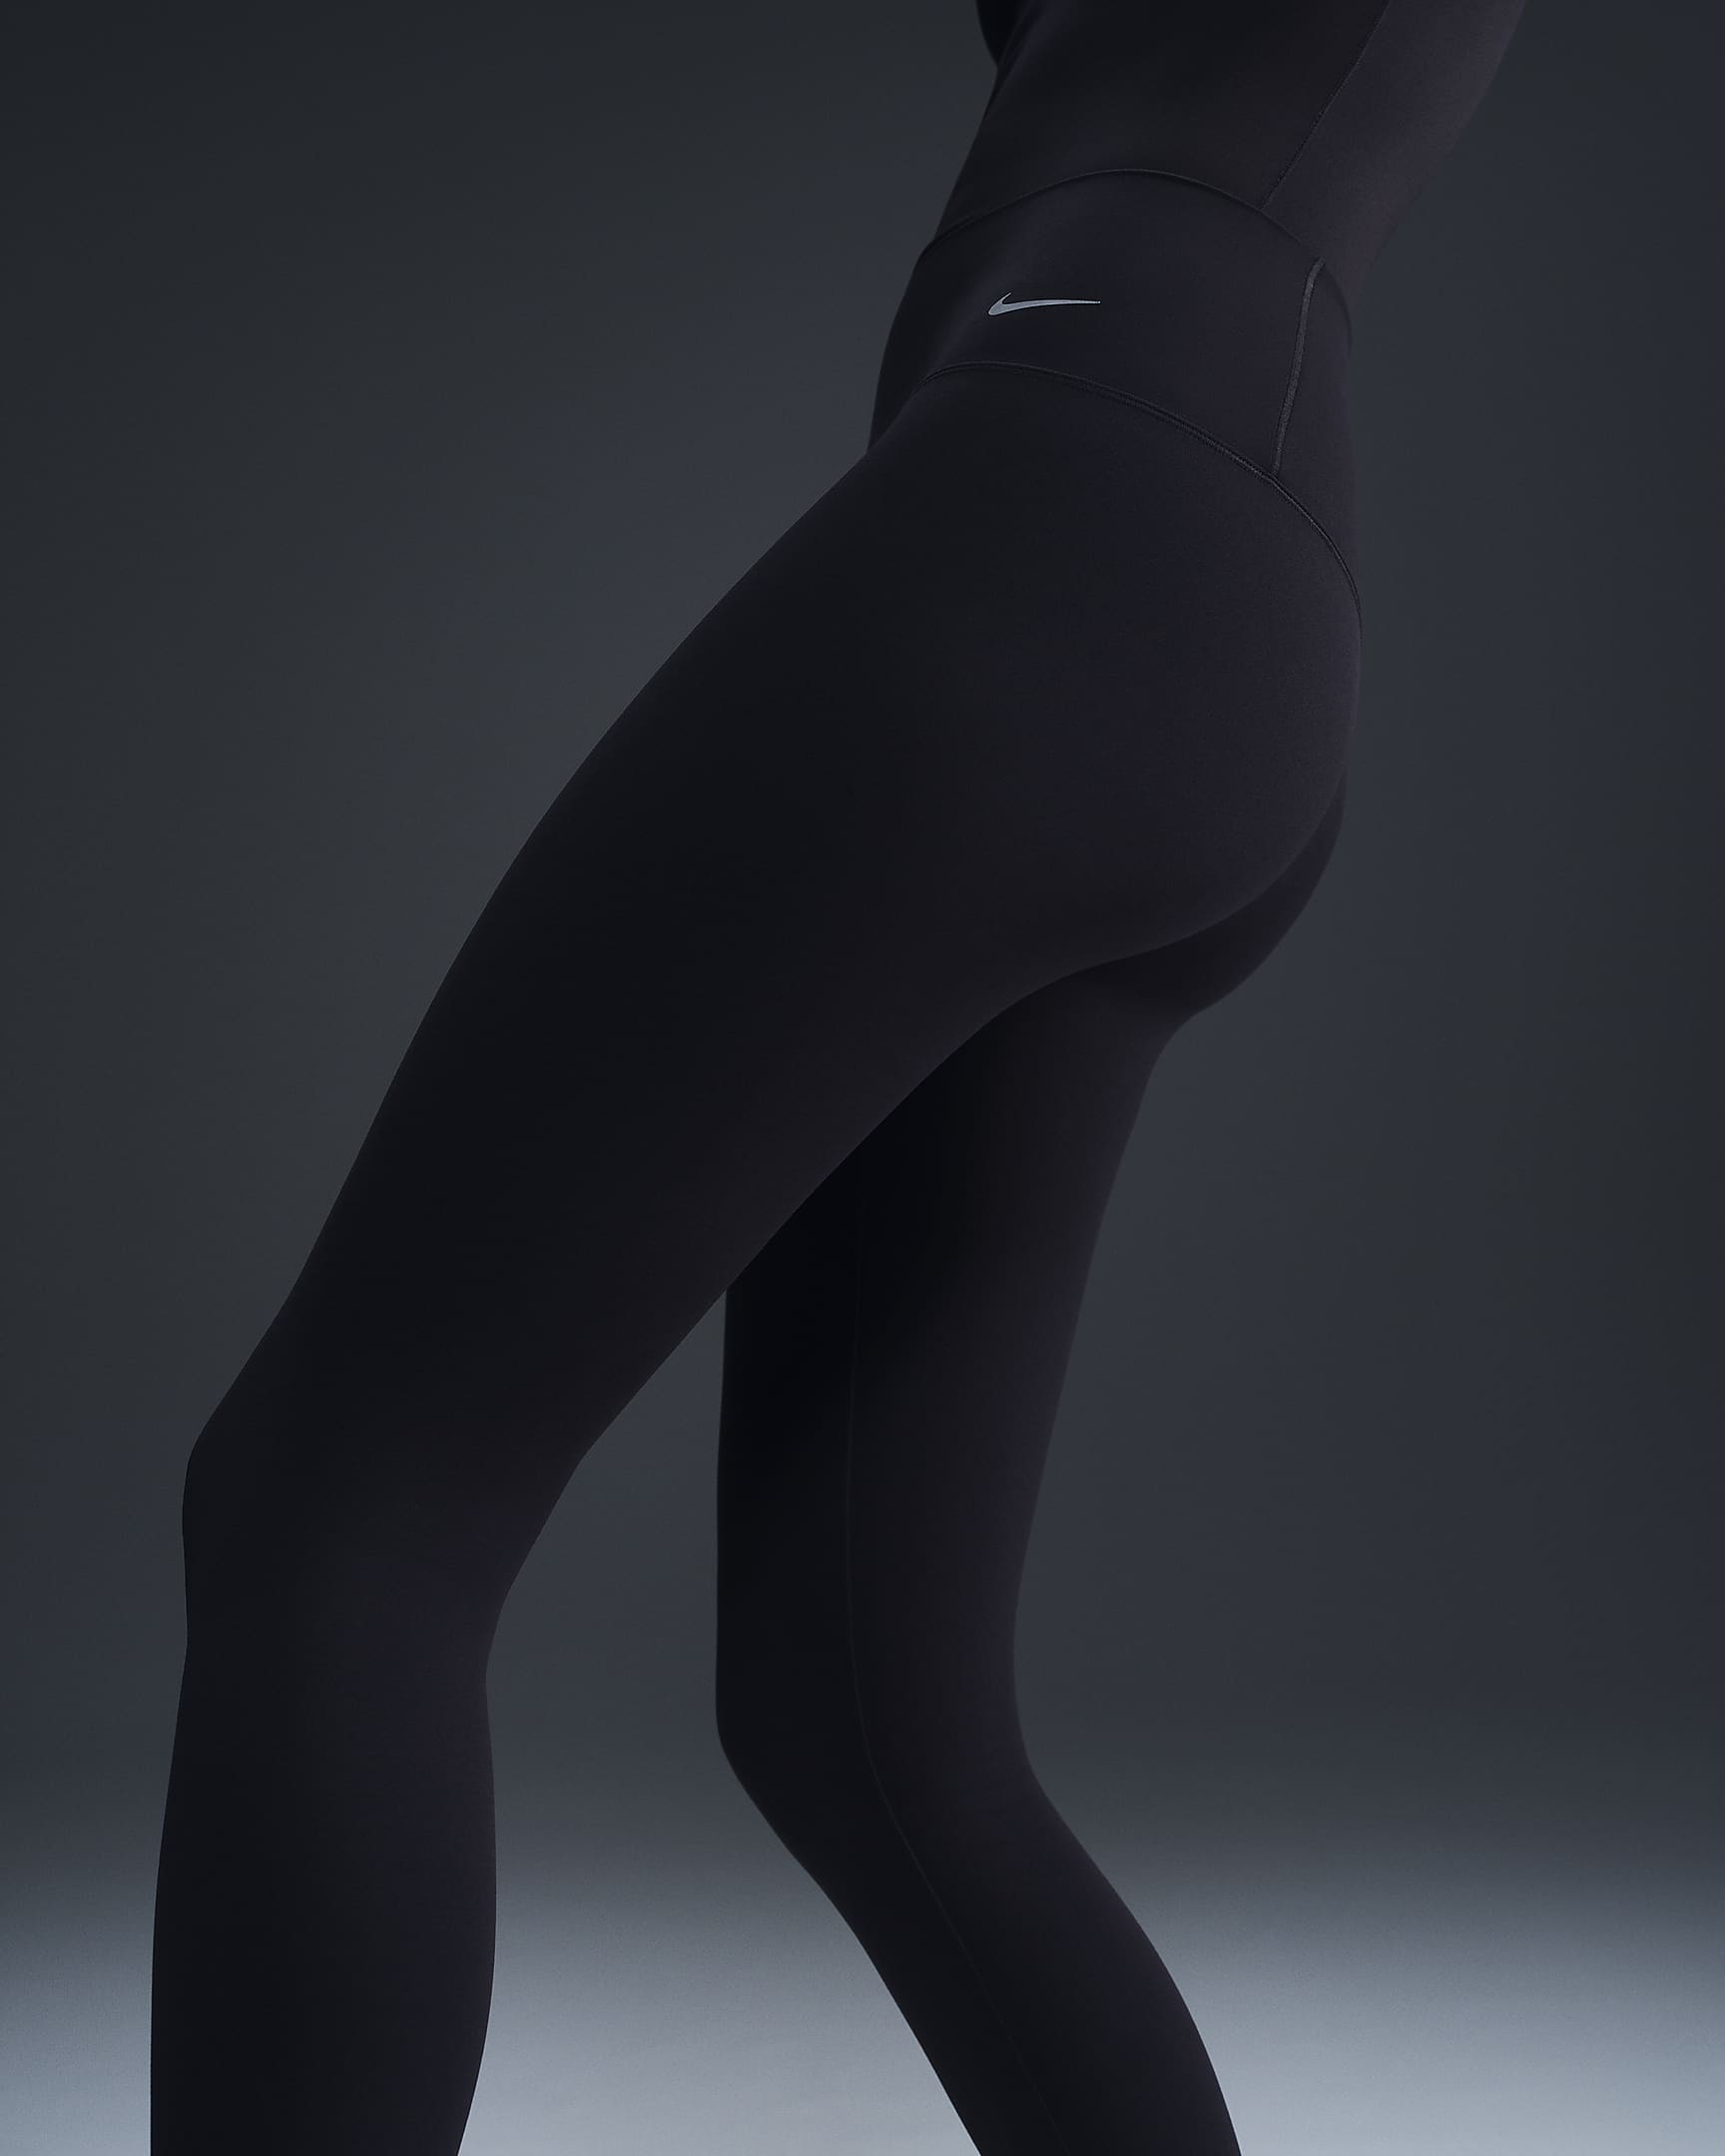 Nike Zenvy Women's Gentle-Support High-Waisted 7/8 Leggings - Black/Black